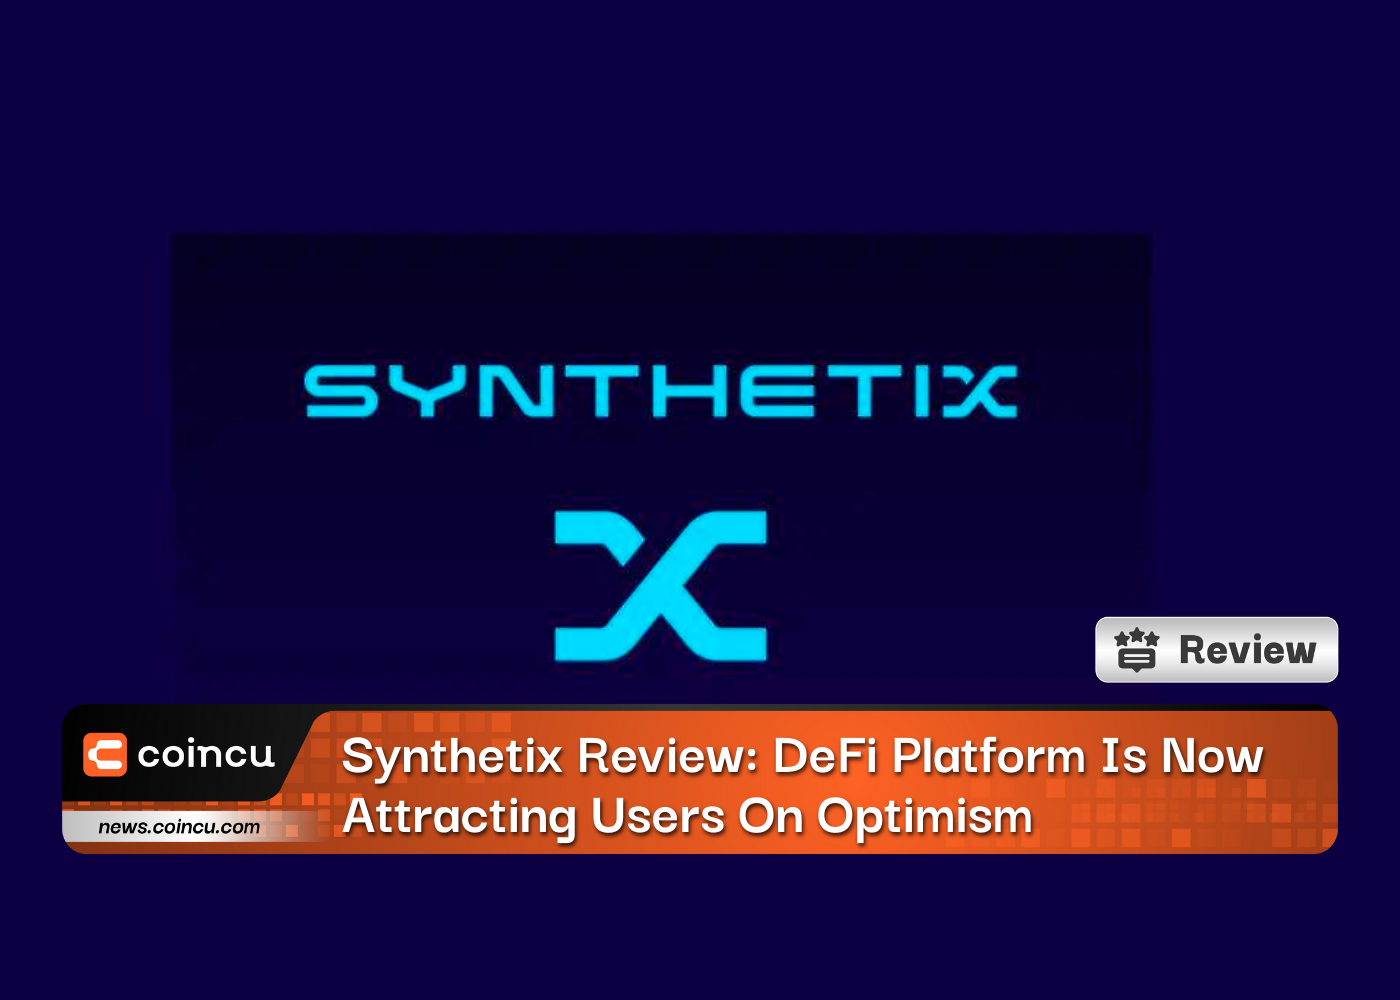 Revue Synthetix : la plate-forme DeFi attire désormais les utilisateurs avec optimisme